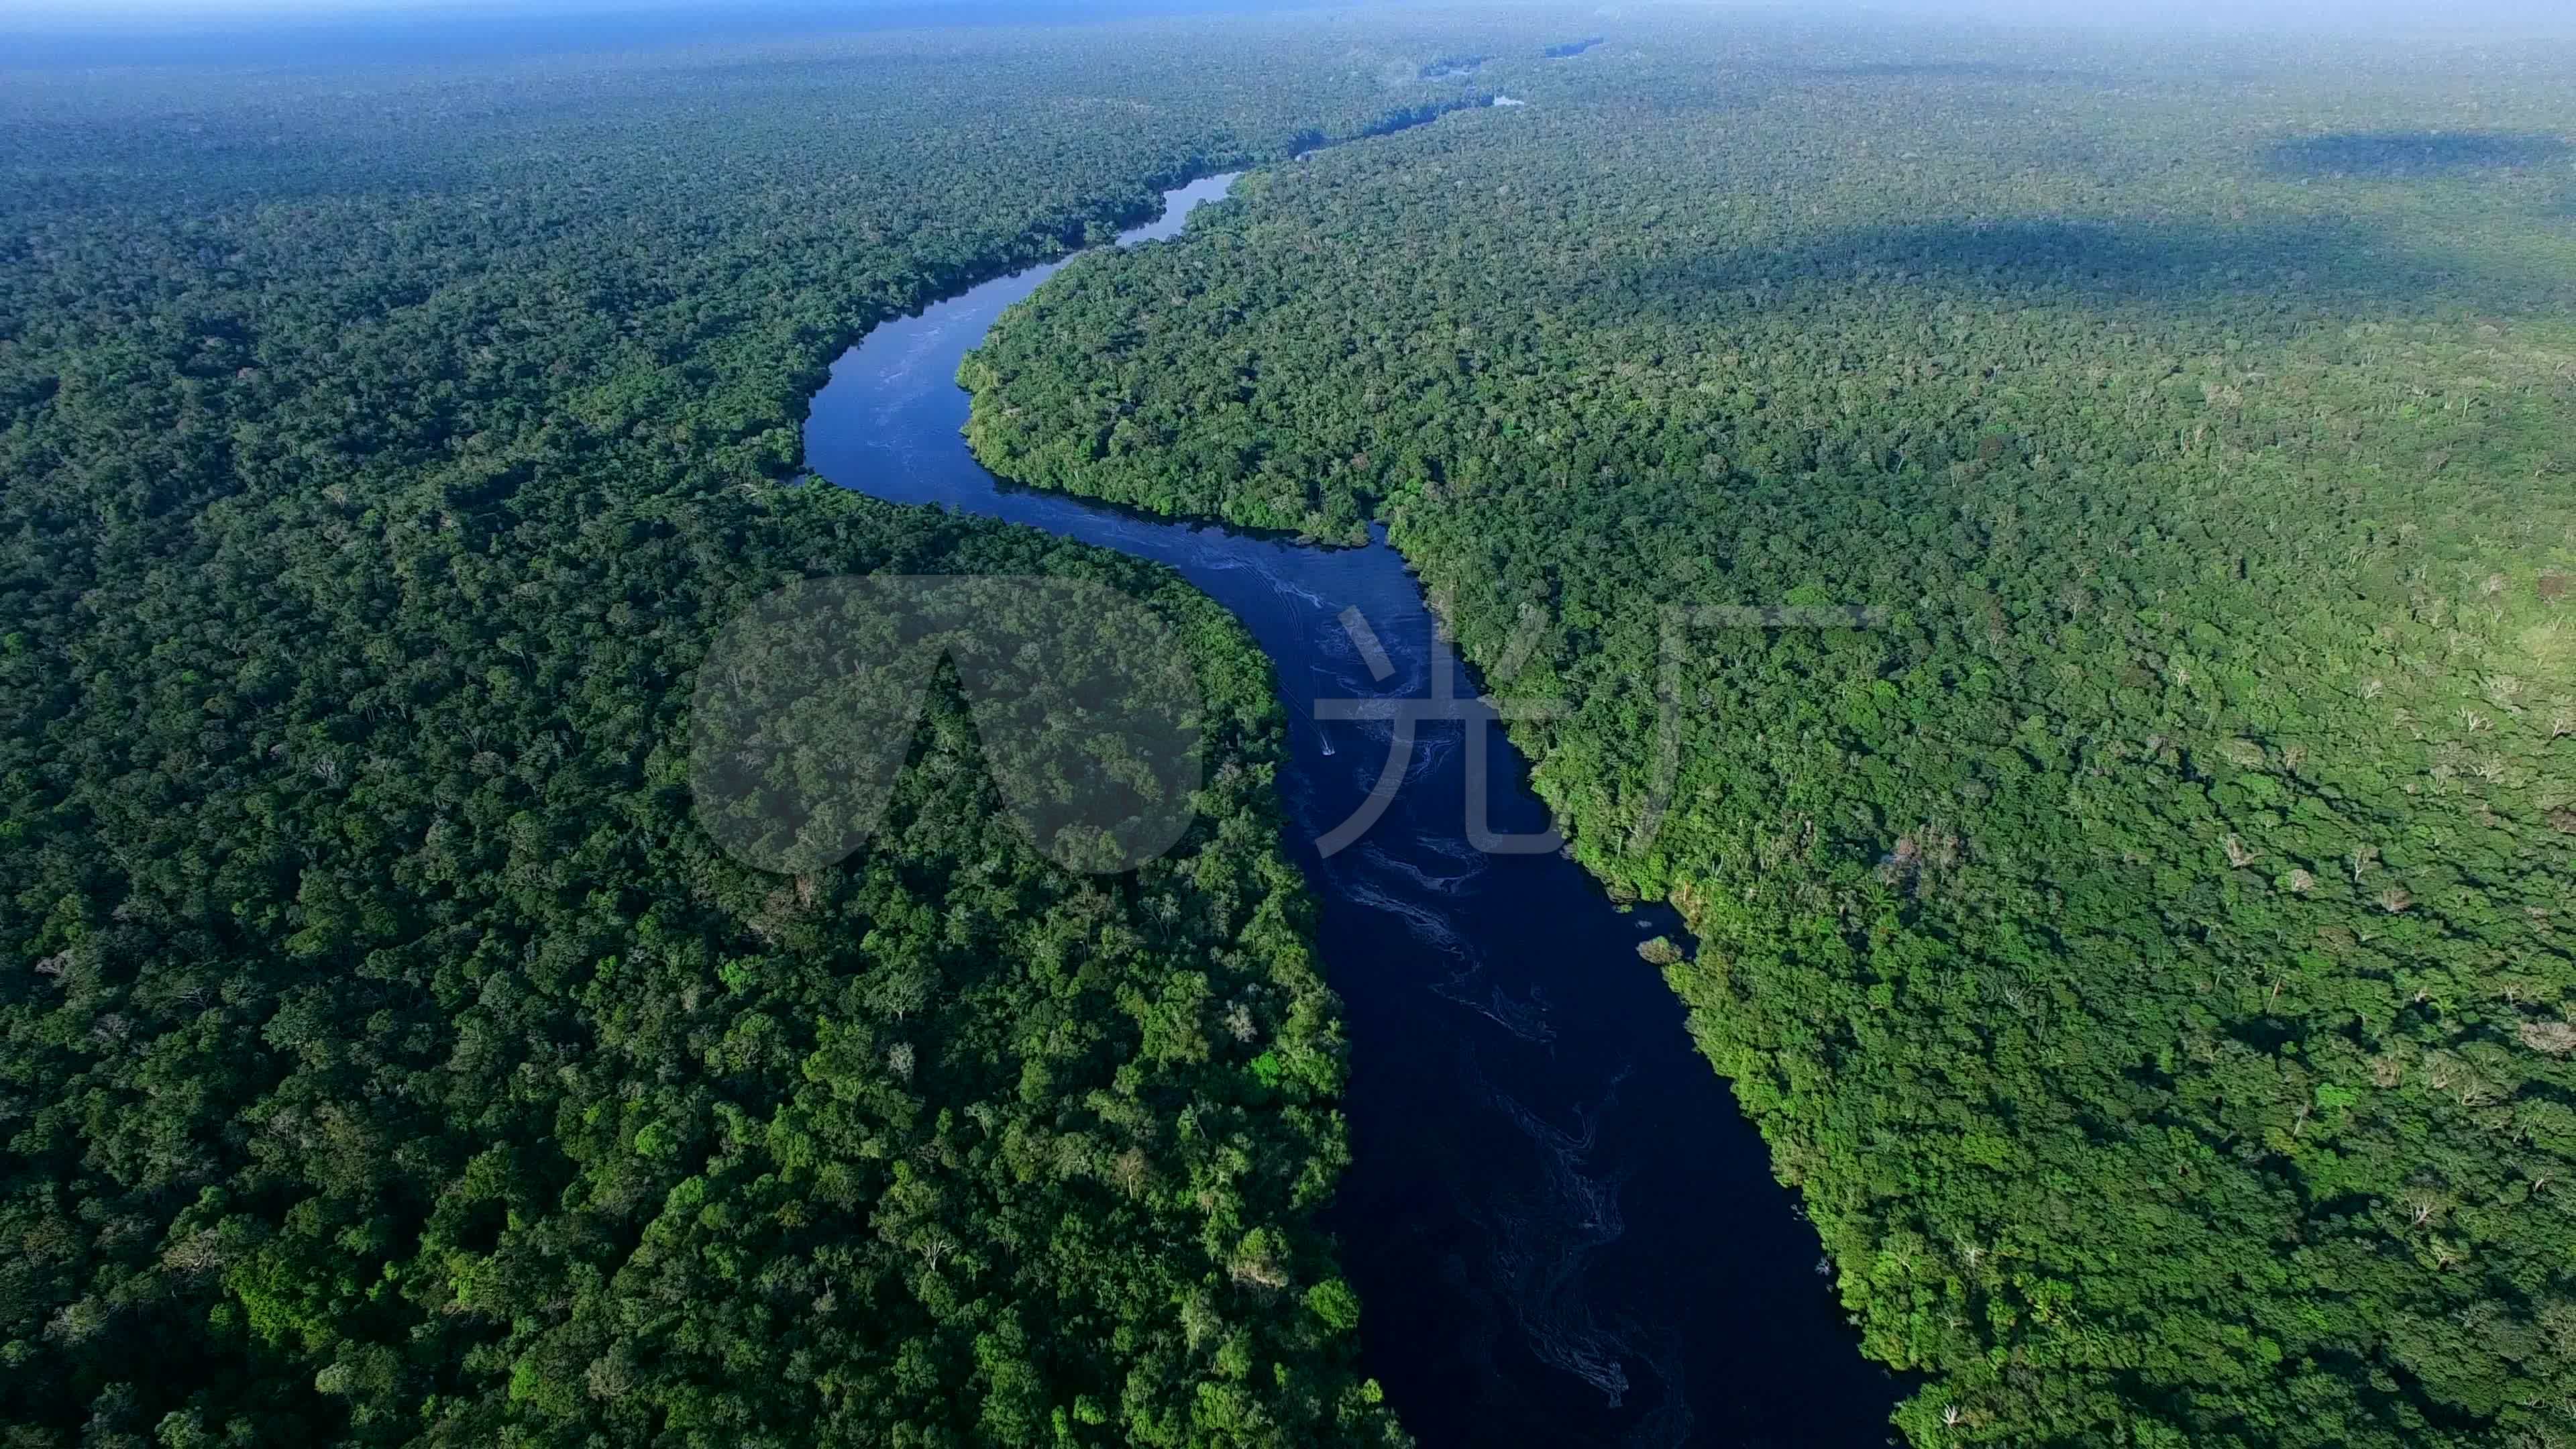 enct摄影作品 神秘的亚马逊河